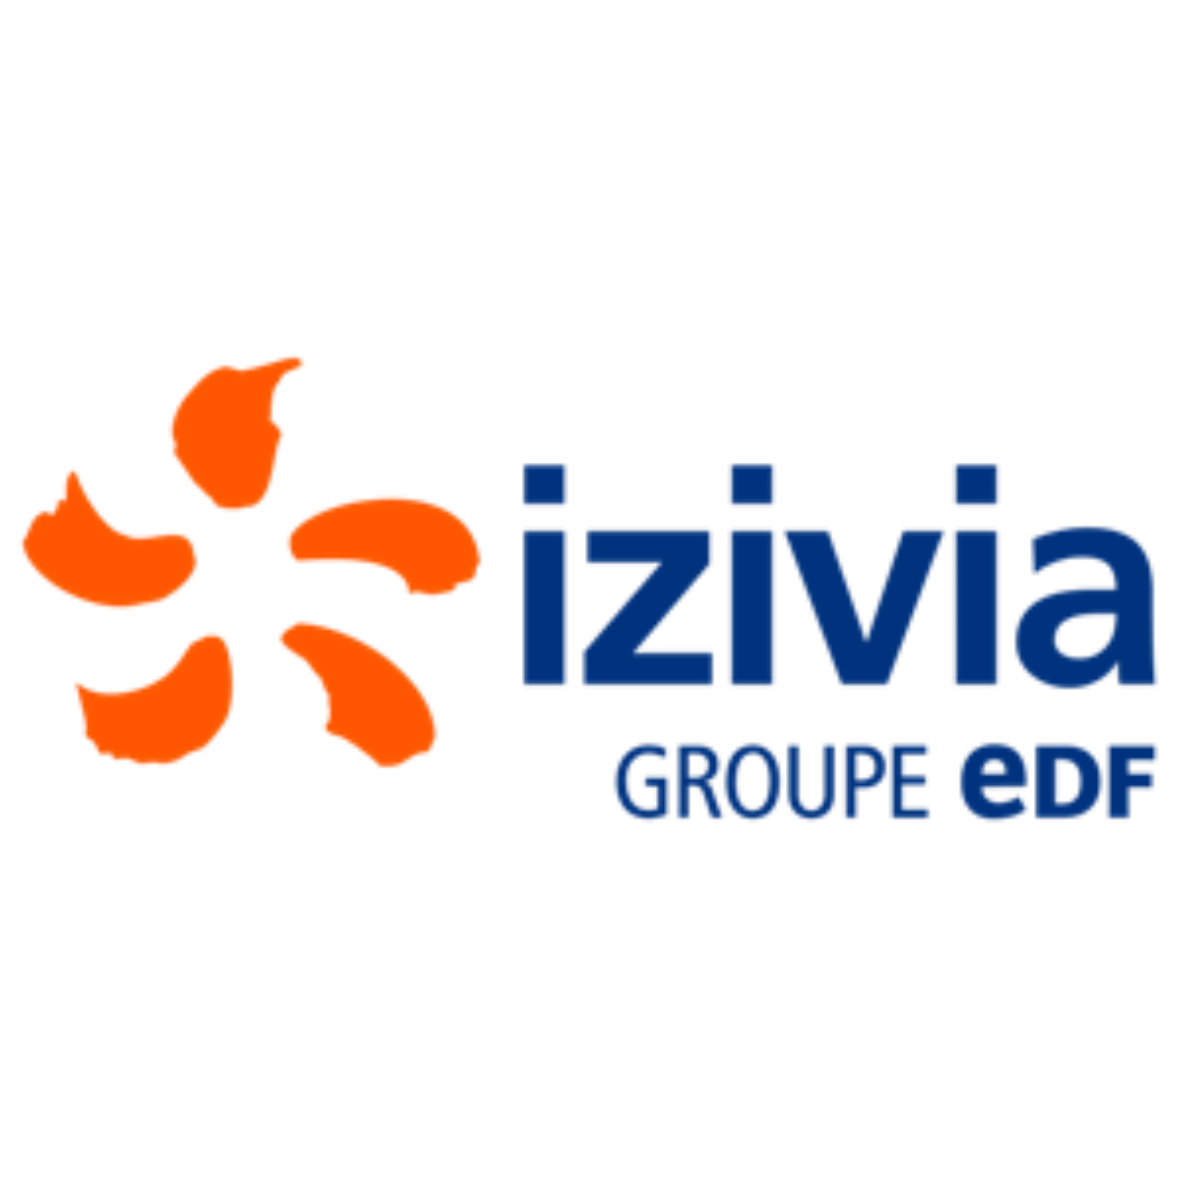 logo société izivia